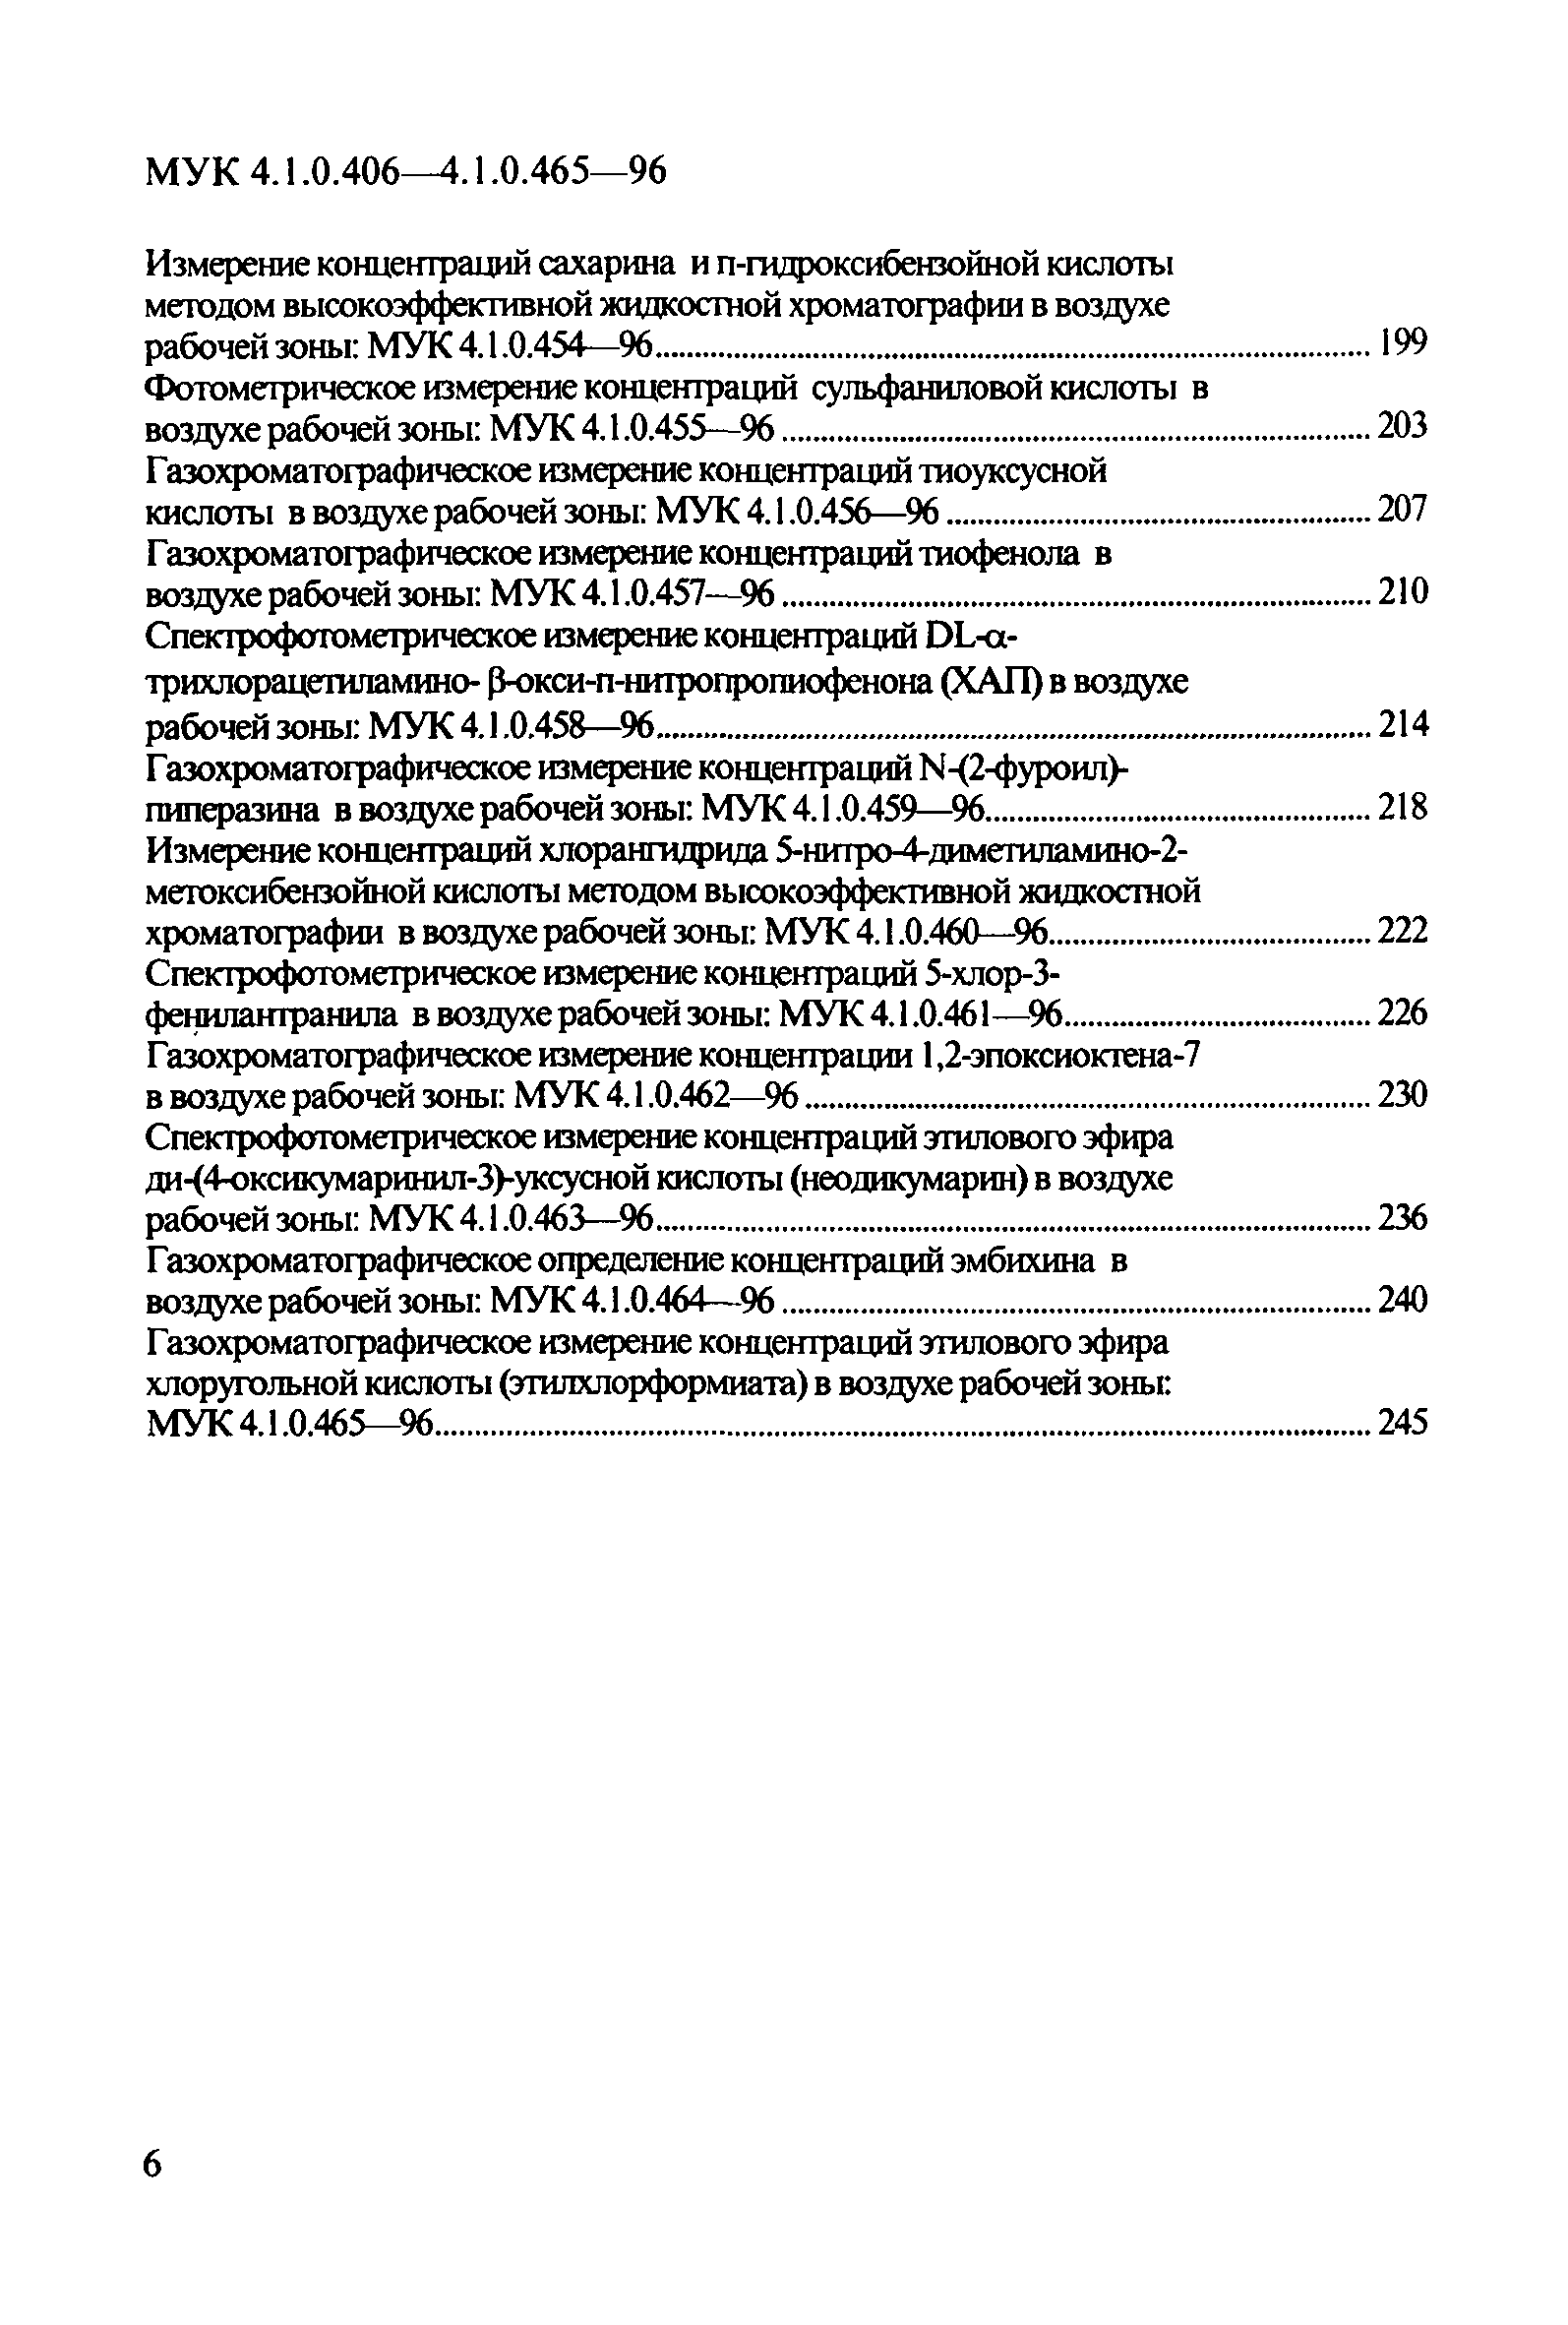 МУК 4.1.0.457-96